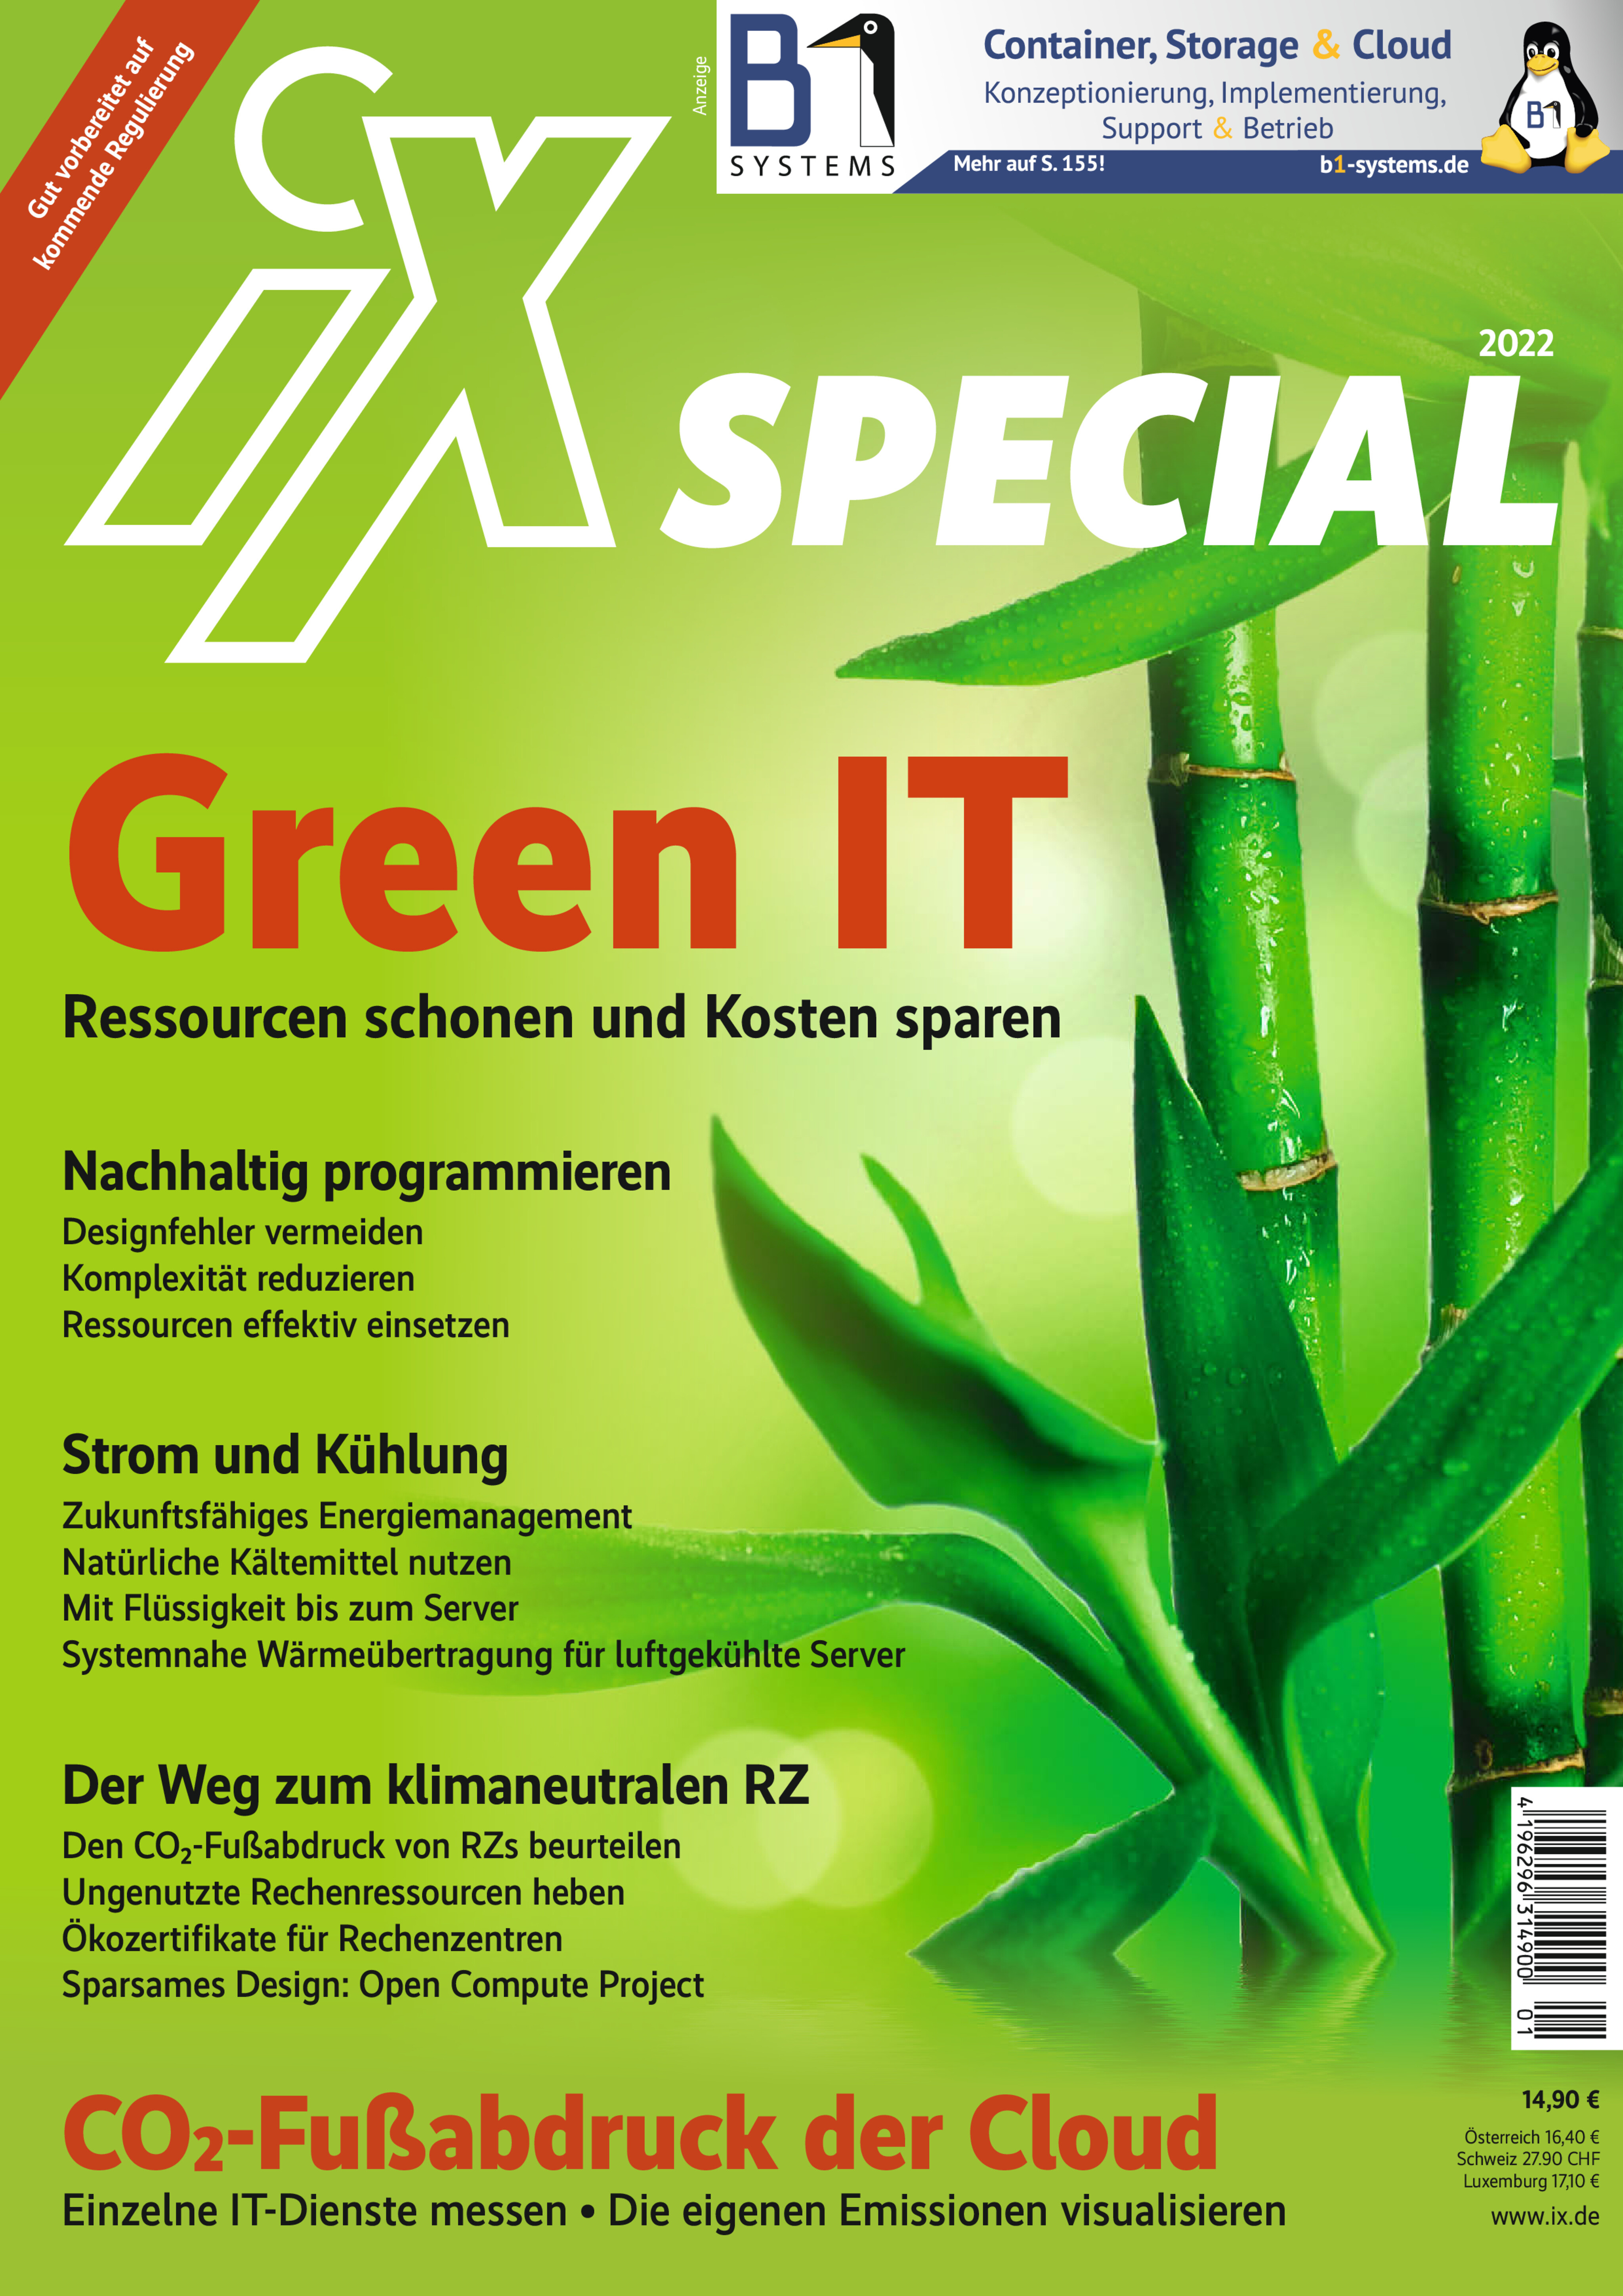 iX Special 2022 -Green IT